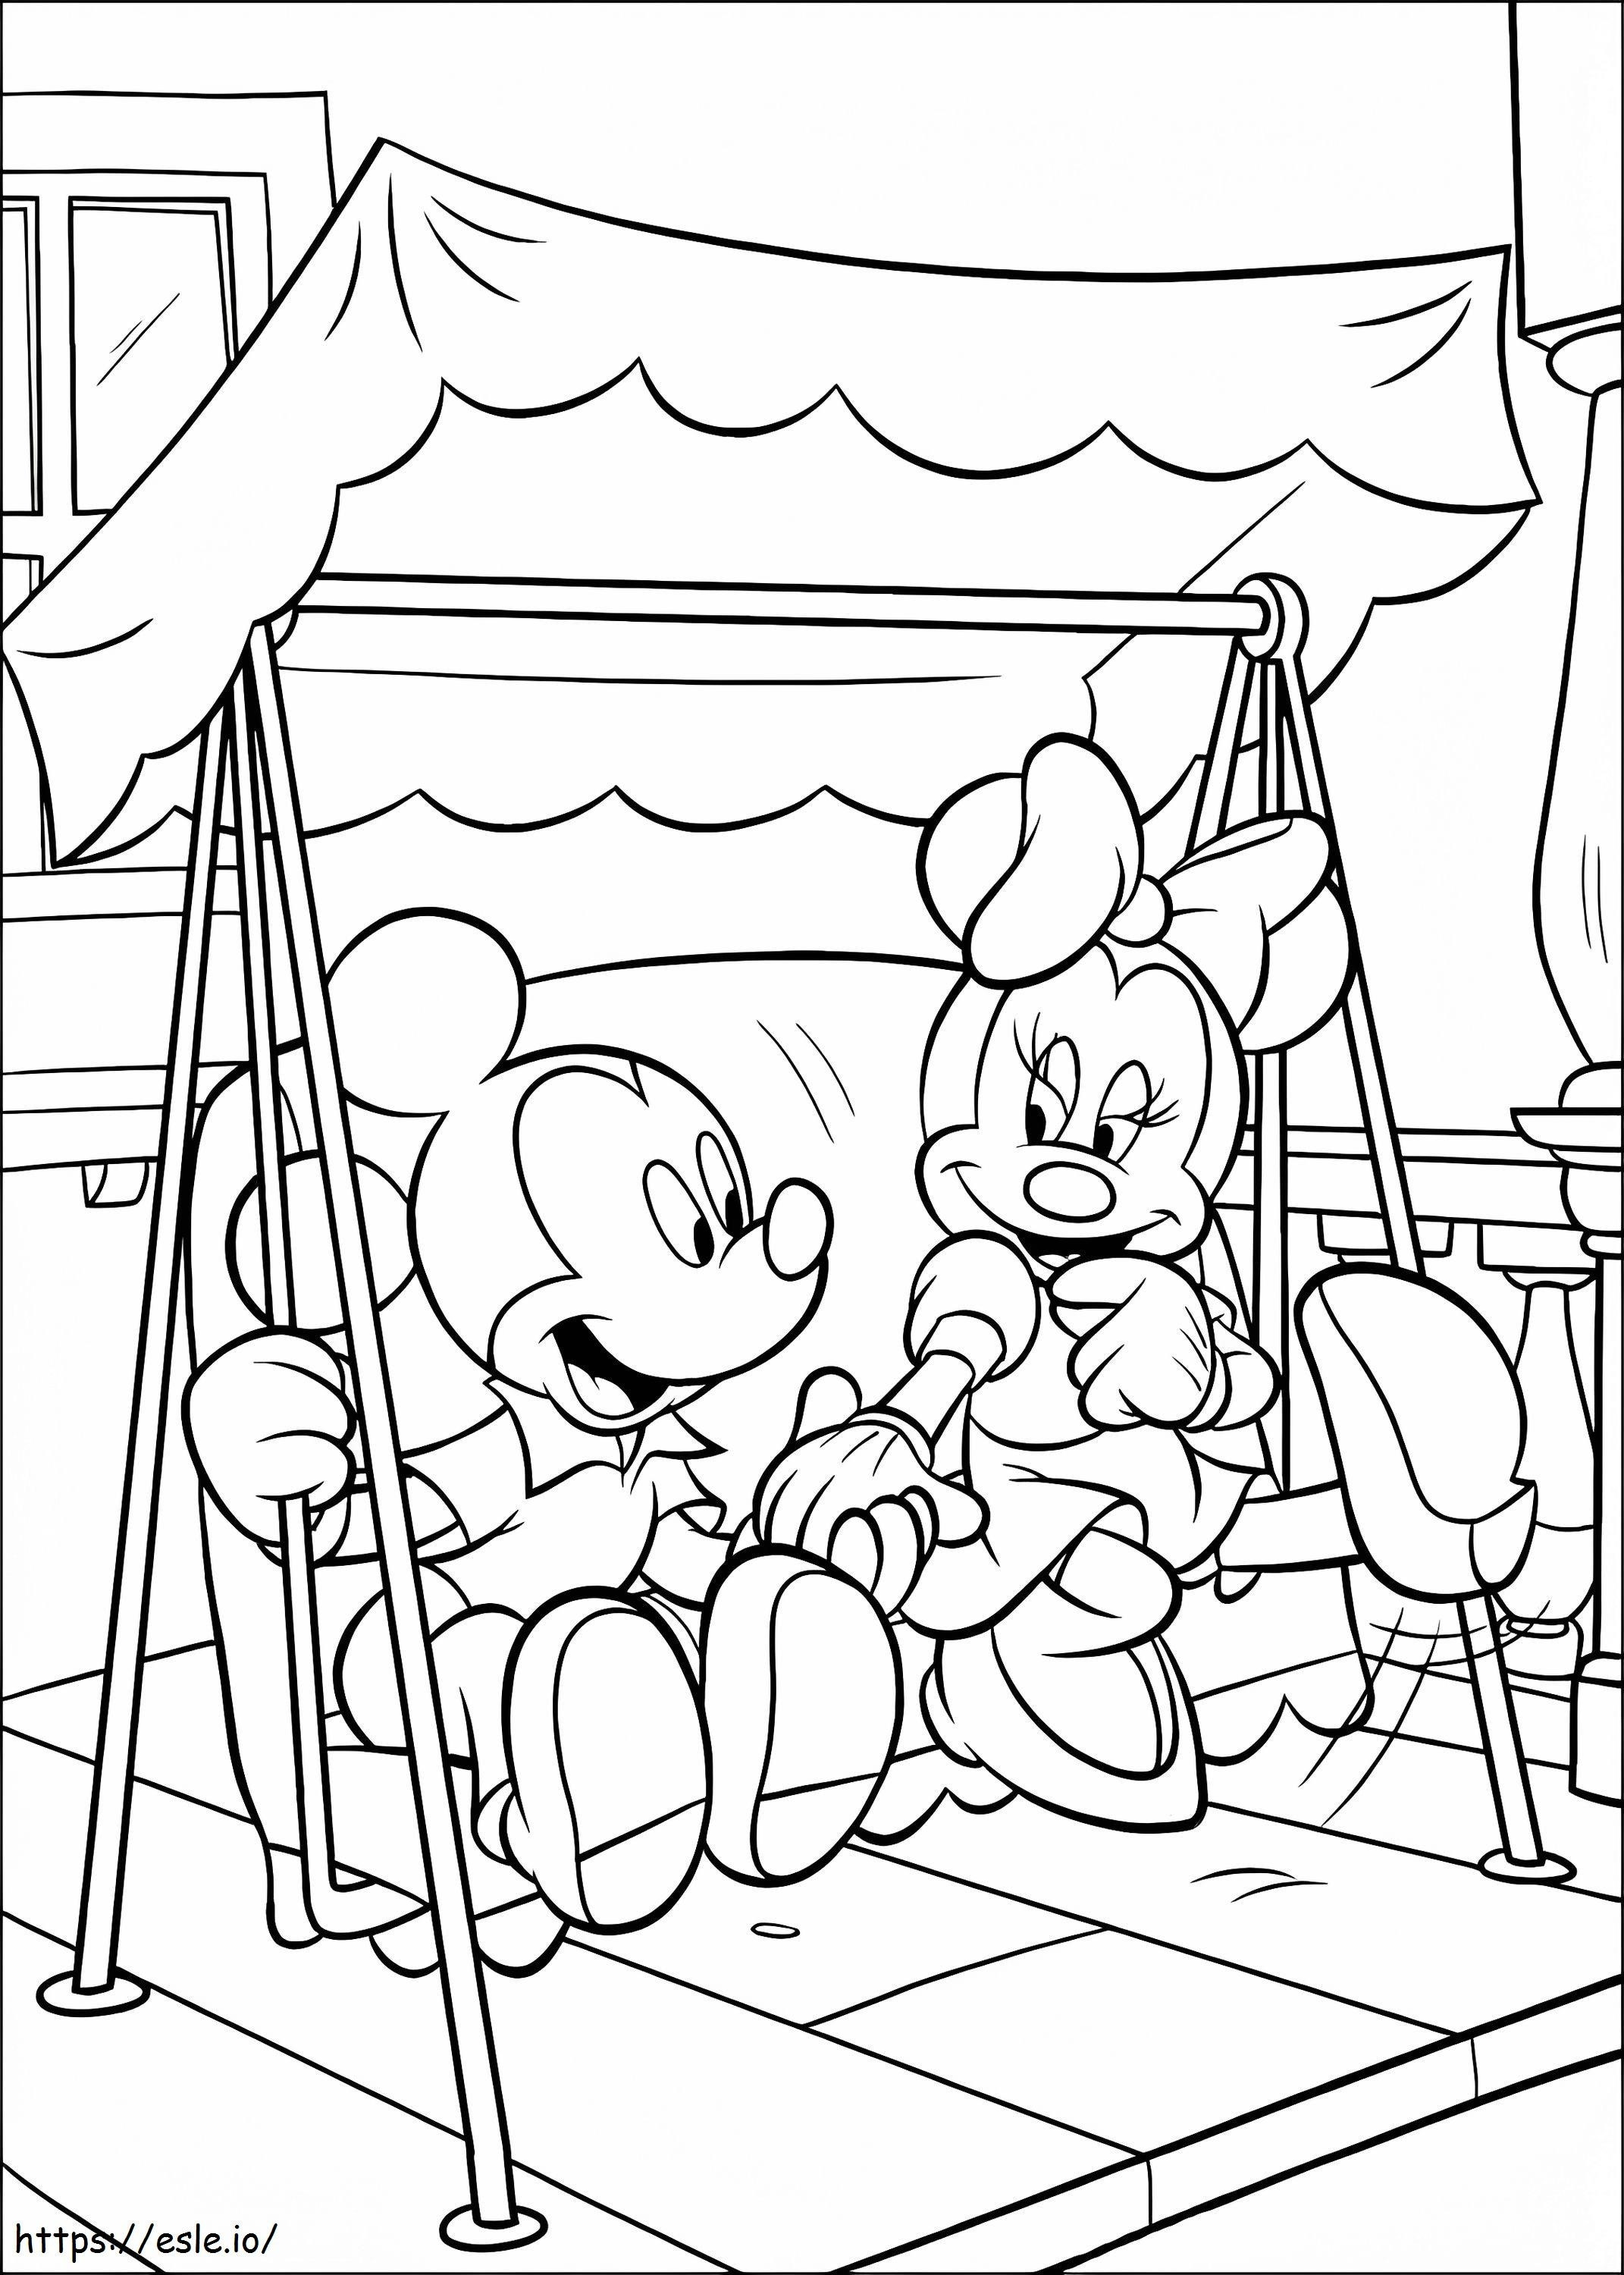 Mickey und Minnie Dating ausmalbilder